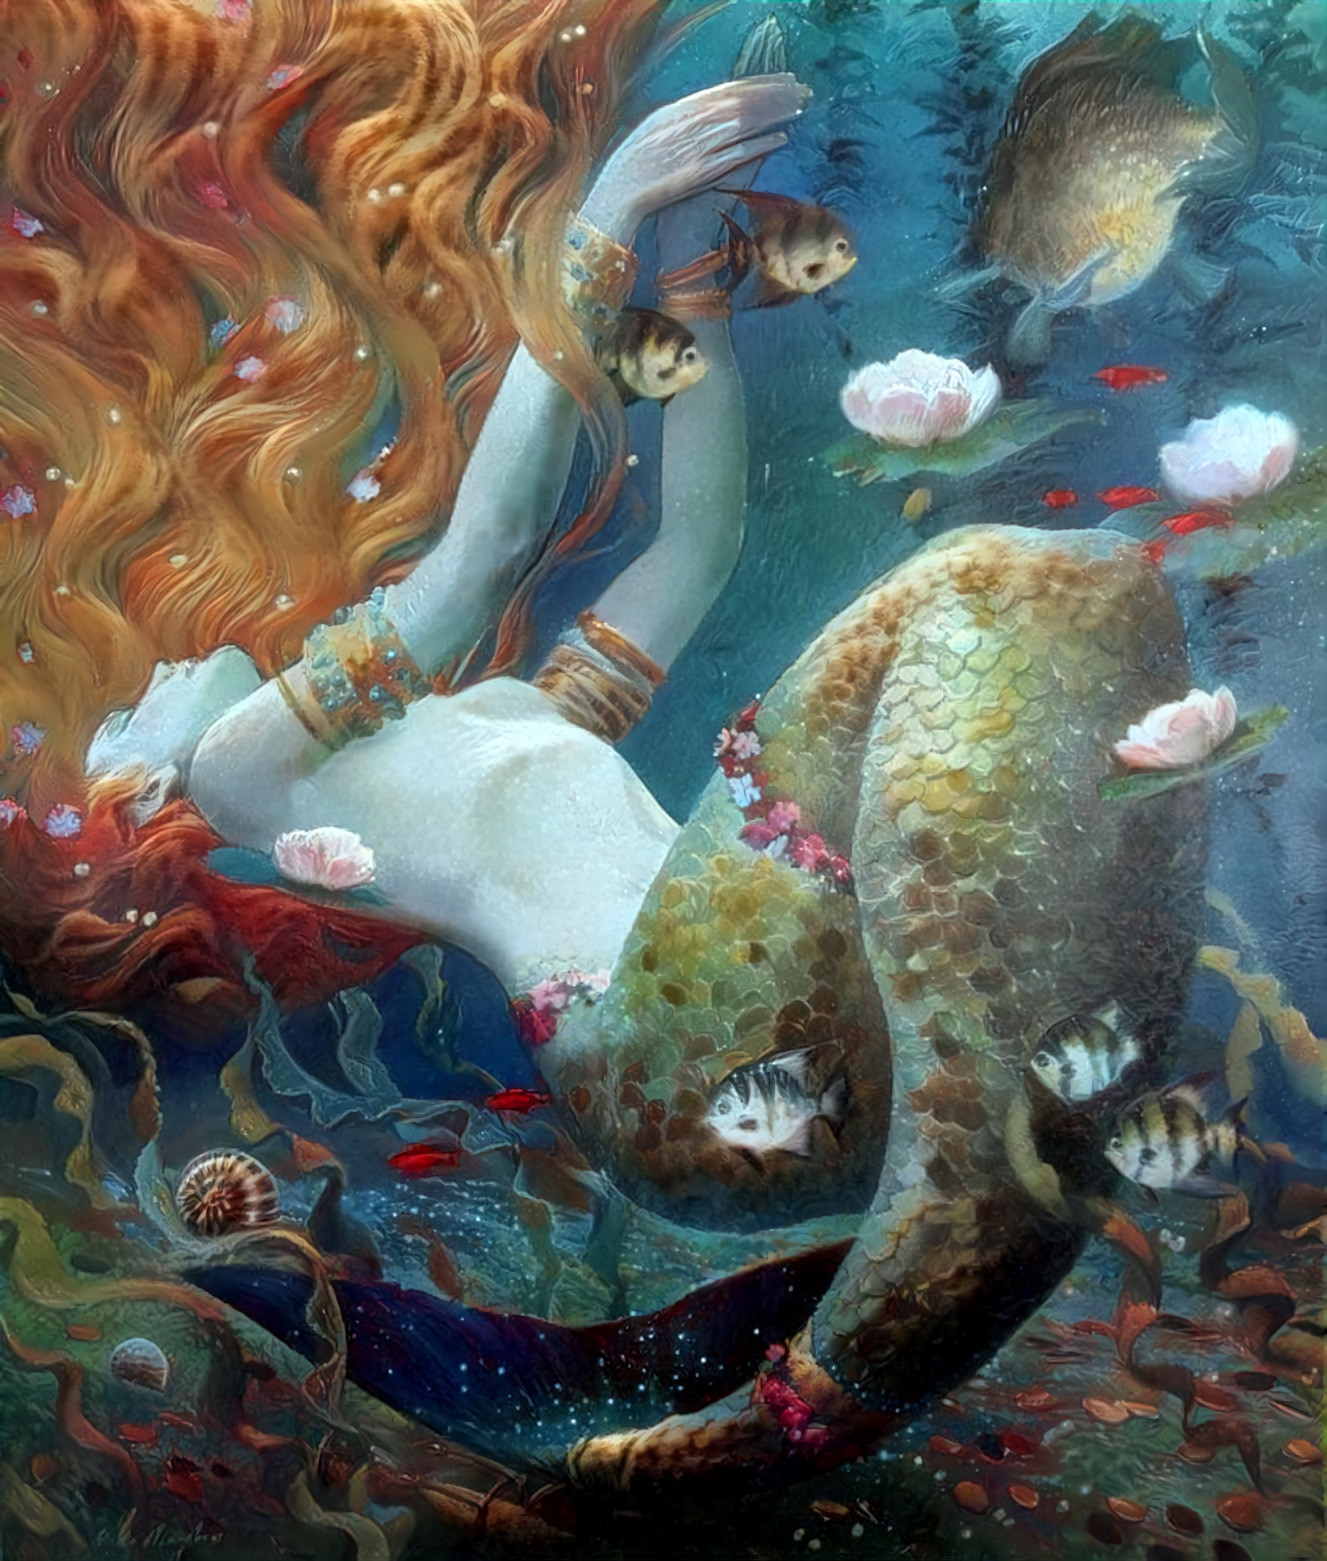 Mermaid in Repose